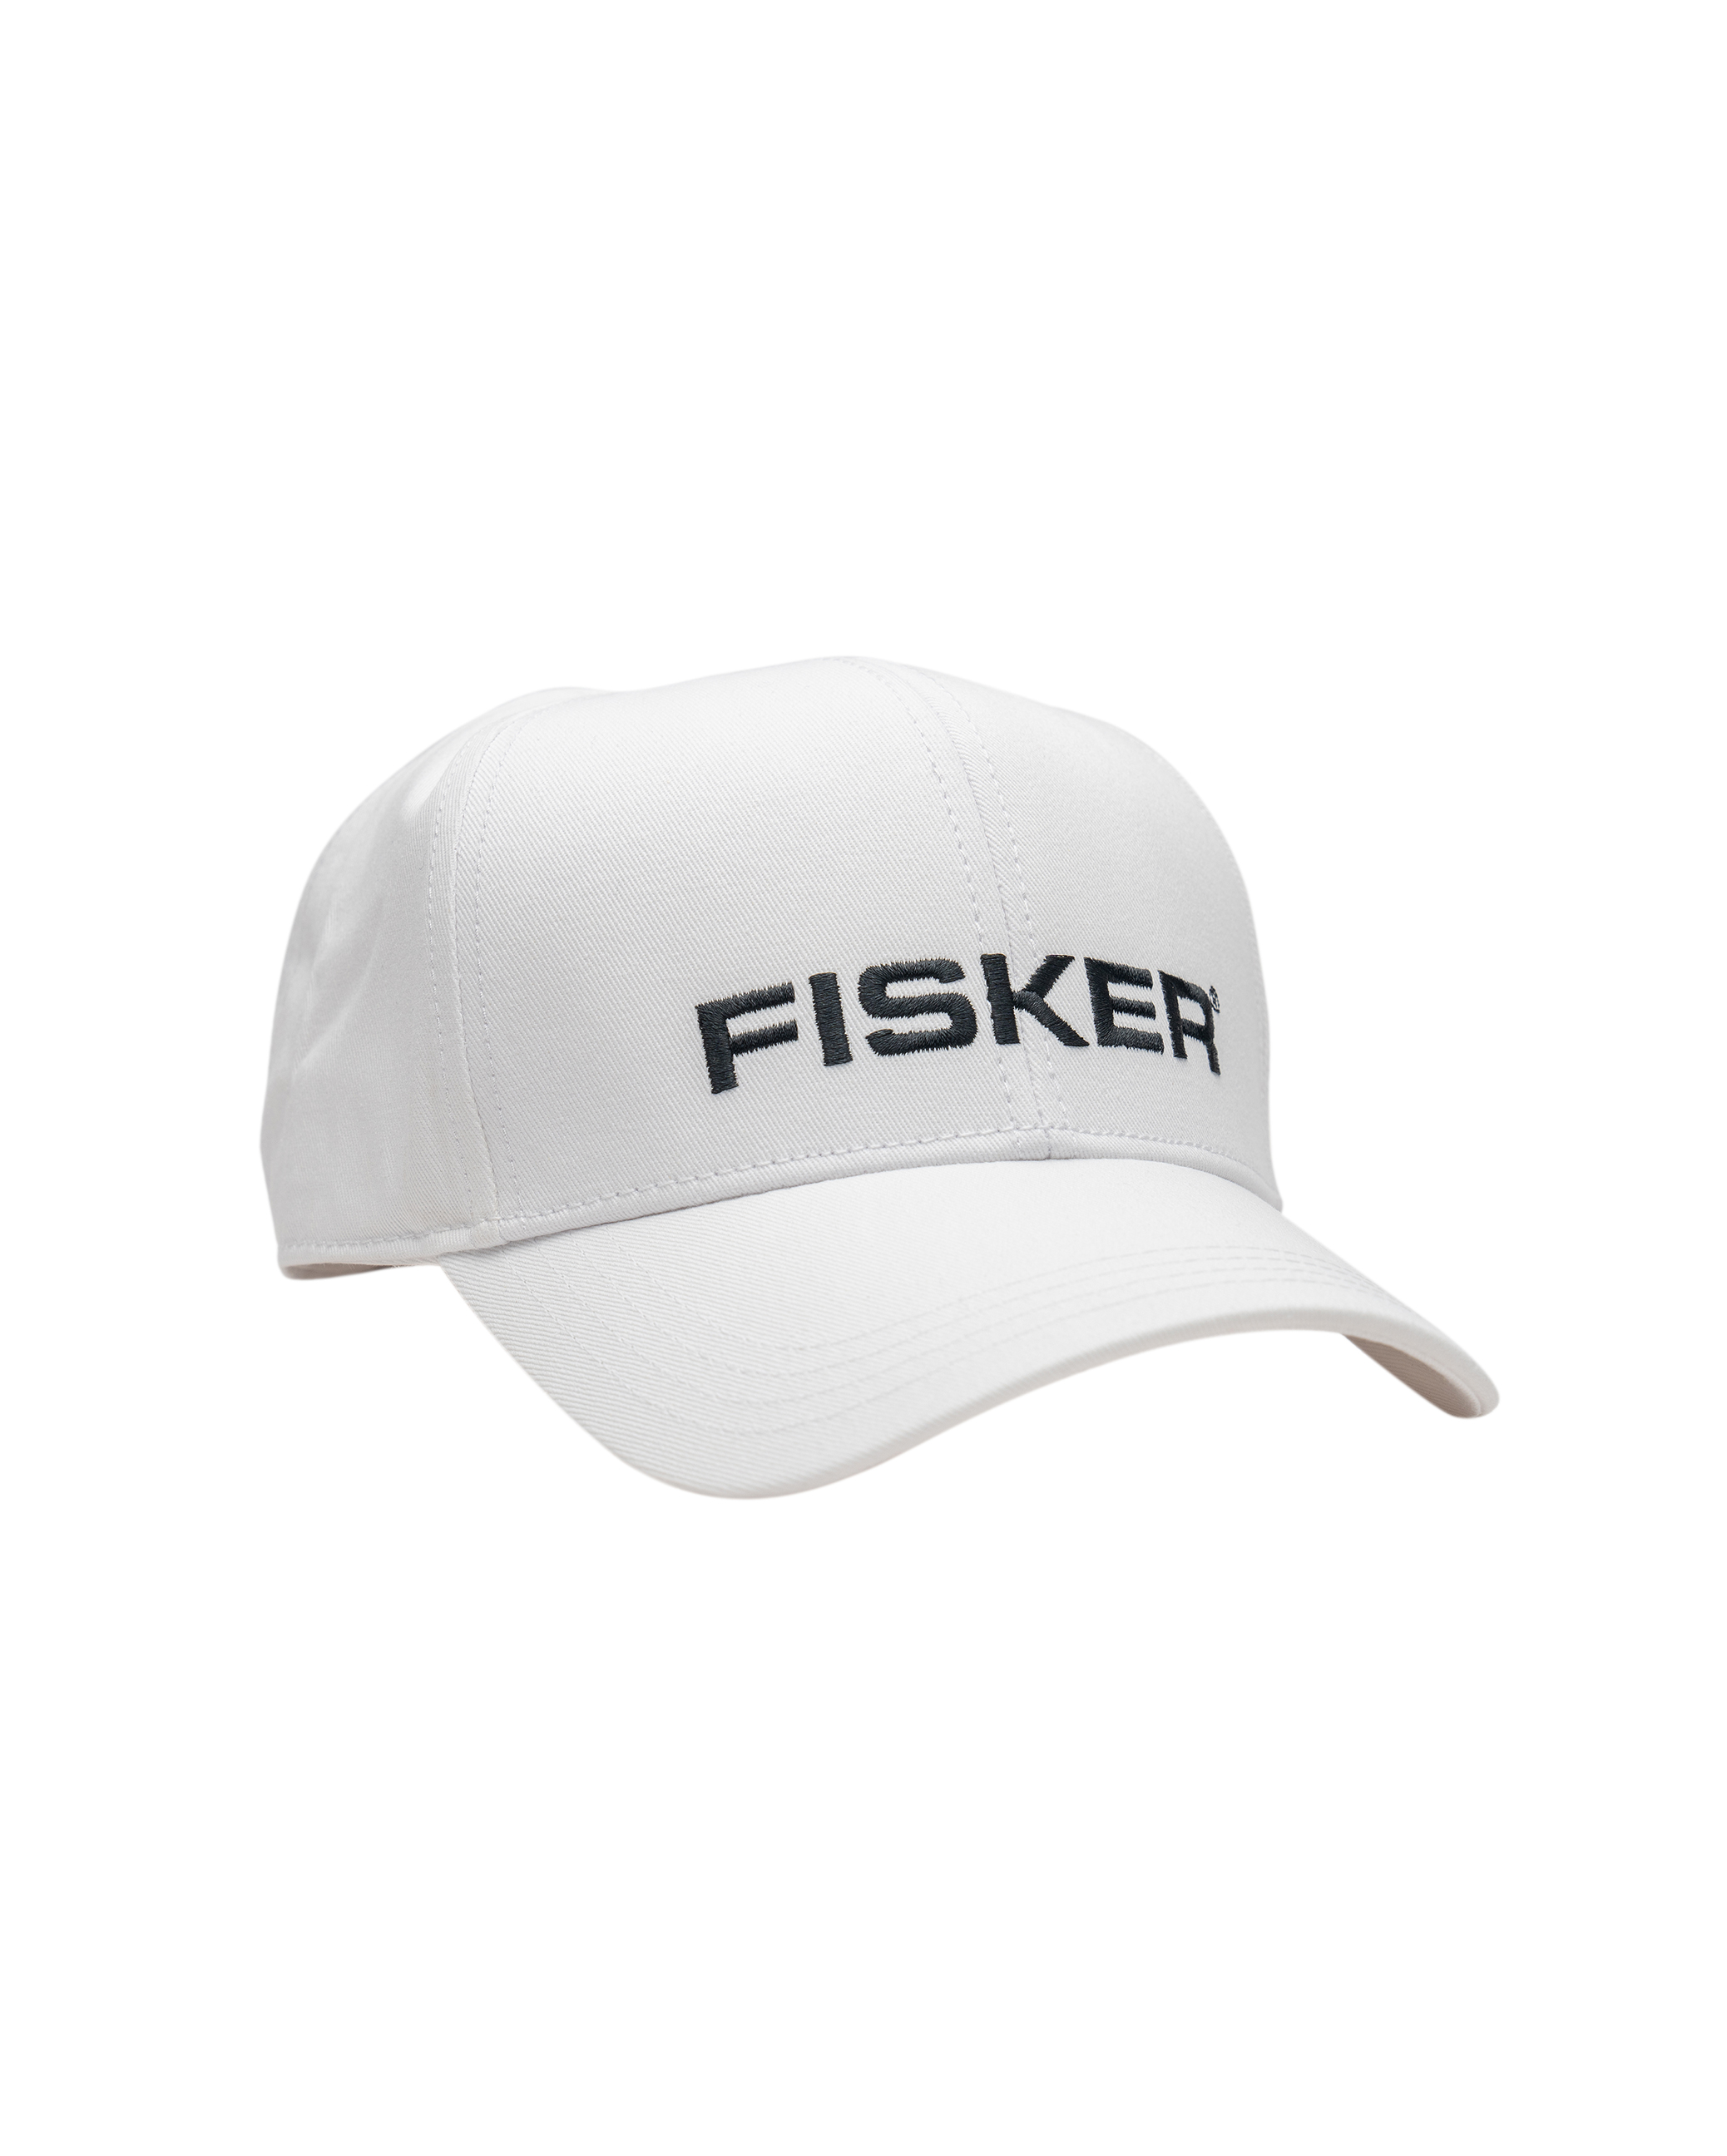 Fisker Baseball Cap, , large image number 0